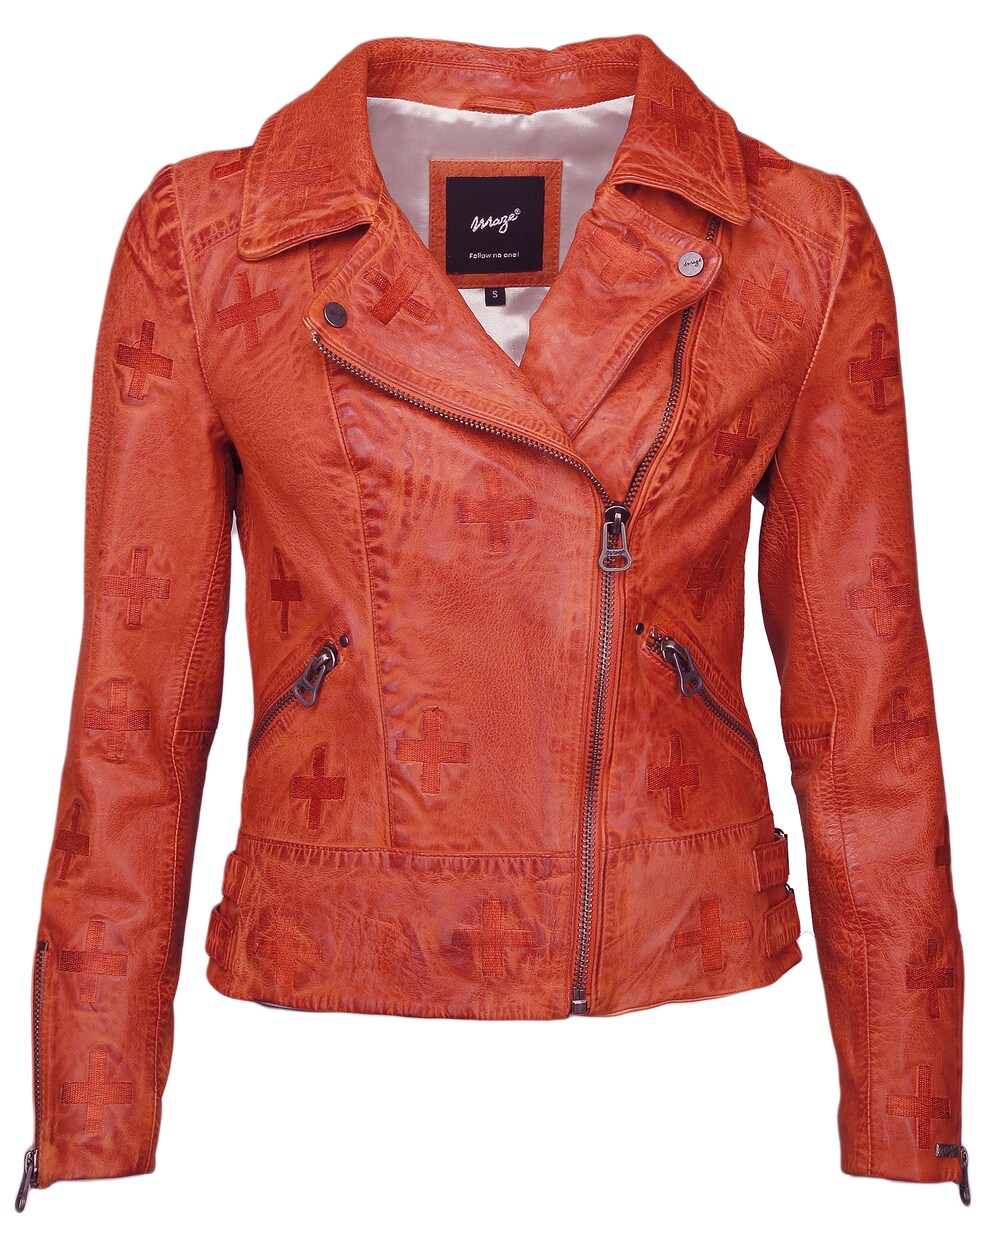 Межсезонная куртка Maze Movas, оранжево-красный межсезонная куртка superdry оранжево красный